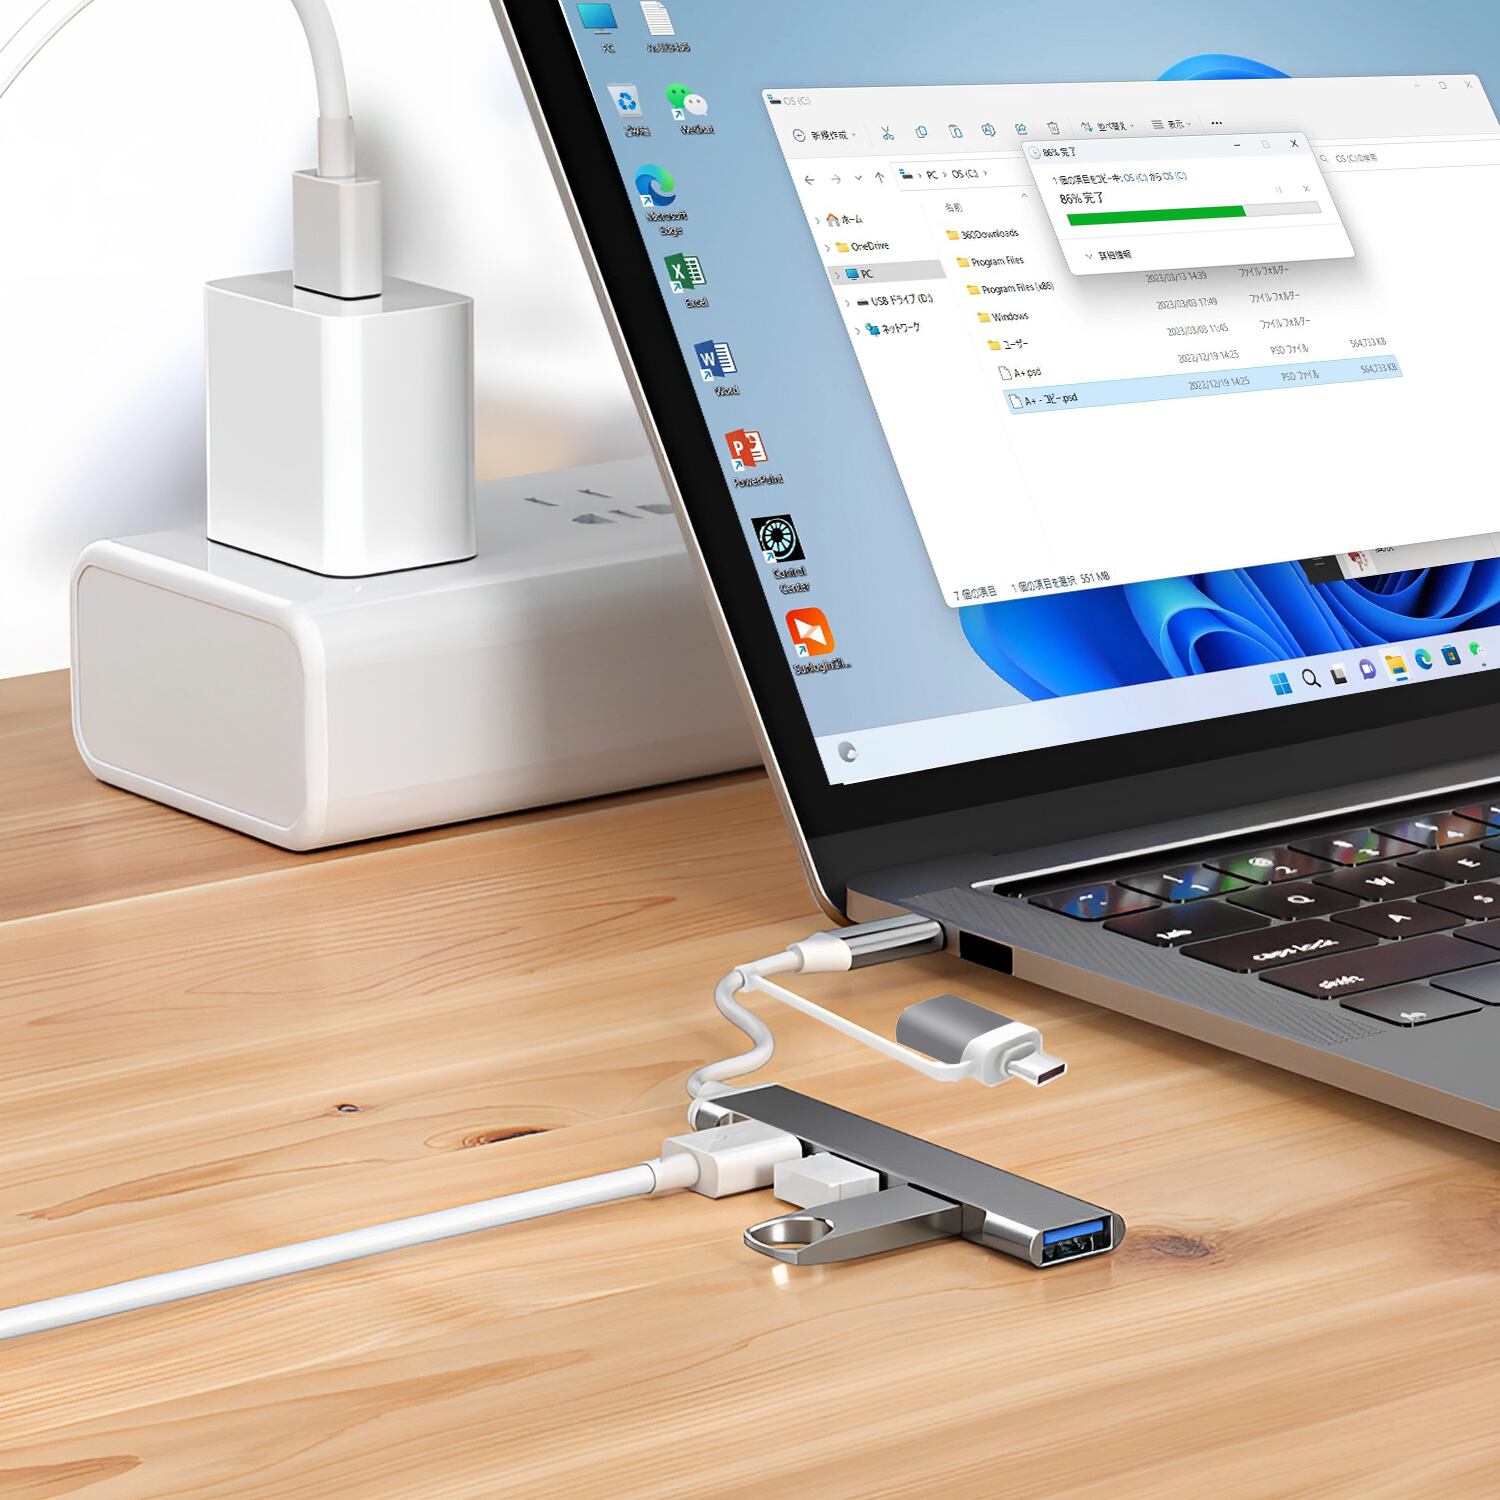 USBハブ2個セット 超薄・軽量・在宅勤務 USB3.0 ハブ 4ポート USB3.0